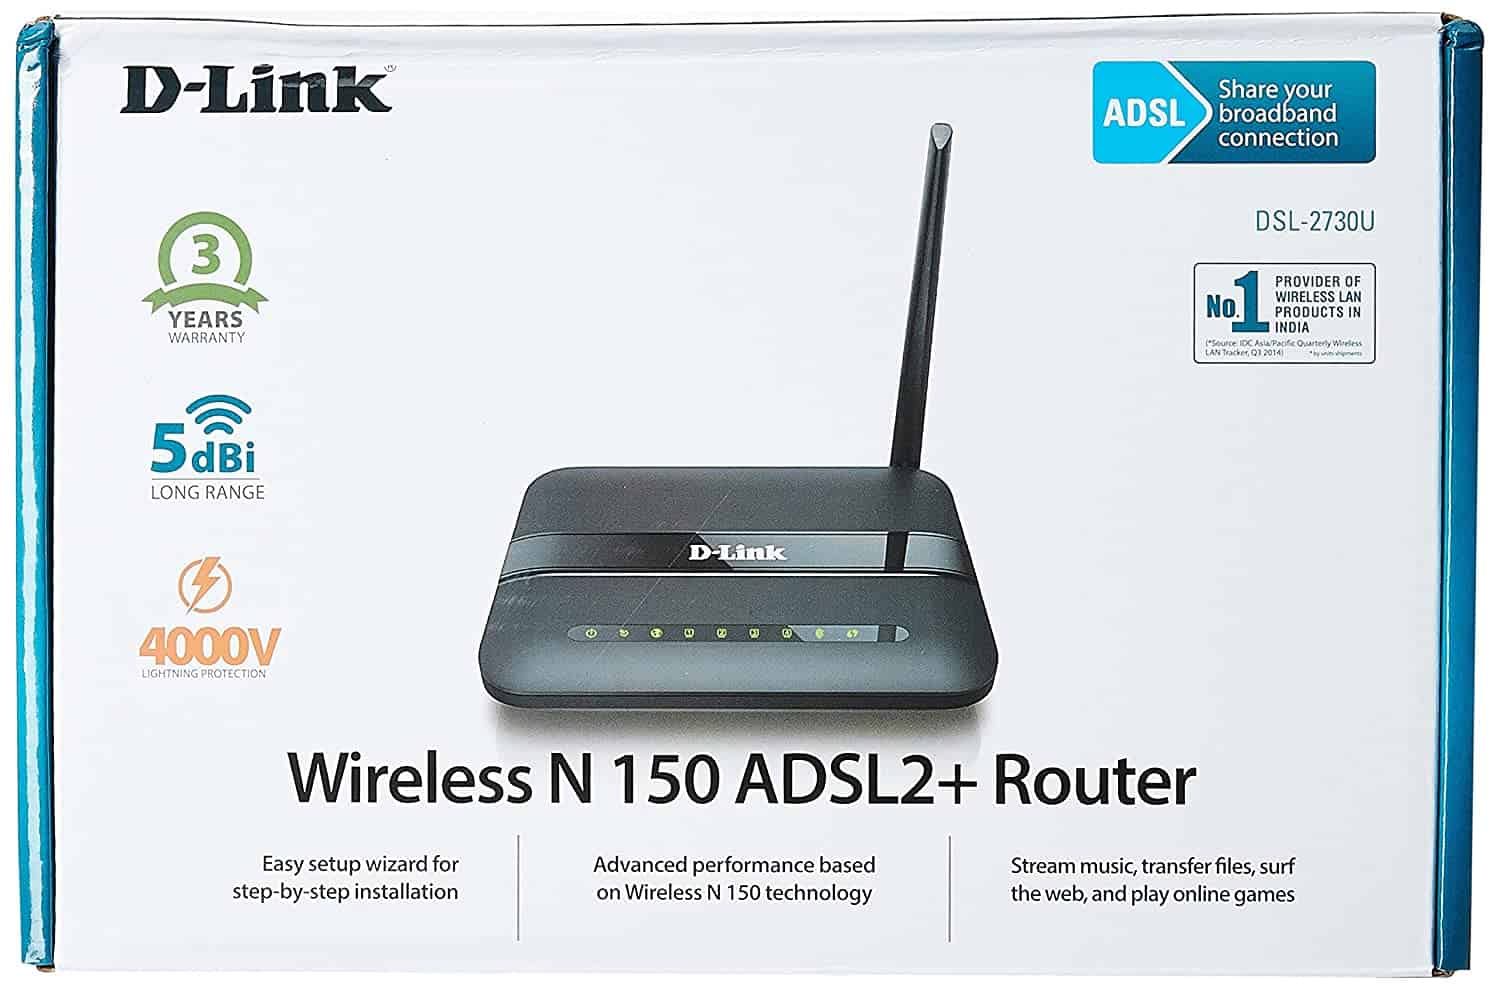 D-Link DSL-2730U Wireless-N 150 ADSL2+ 4-Port Router (Black) | DATAMATION